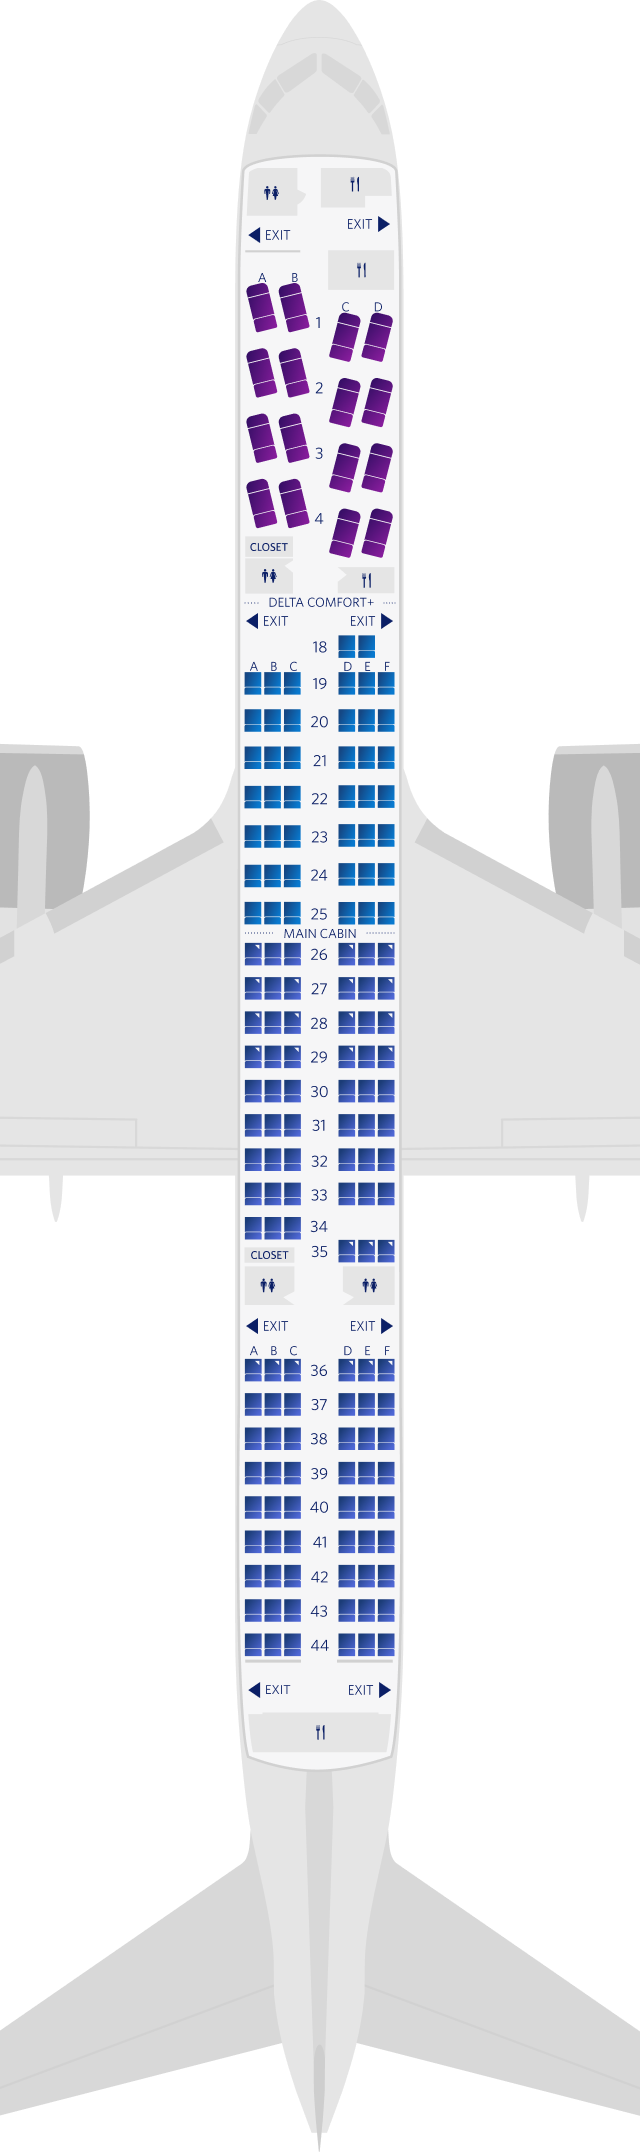 보잉 757-200-75S 좌석 배치도